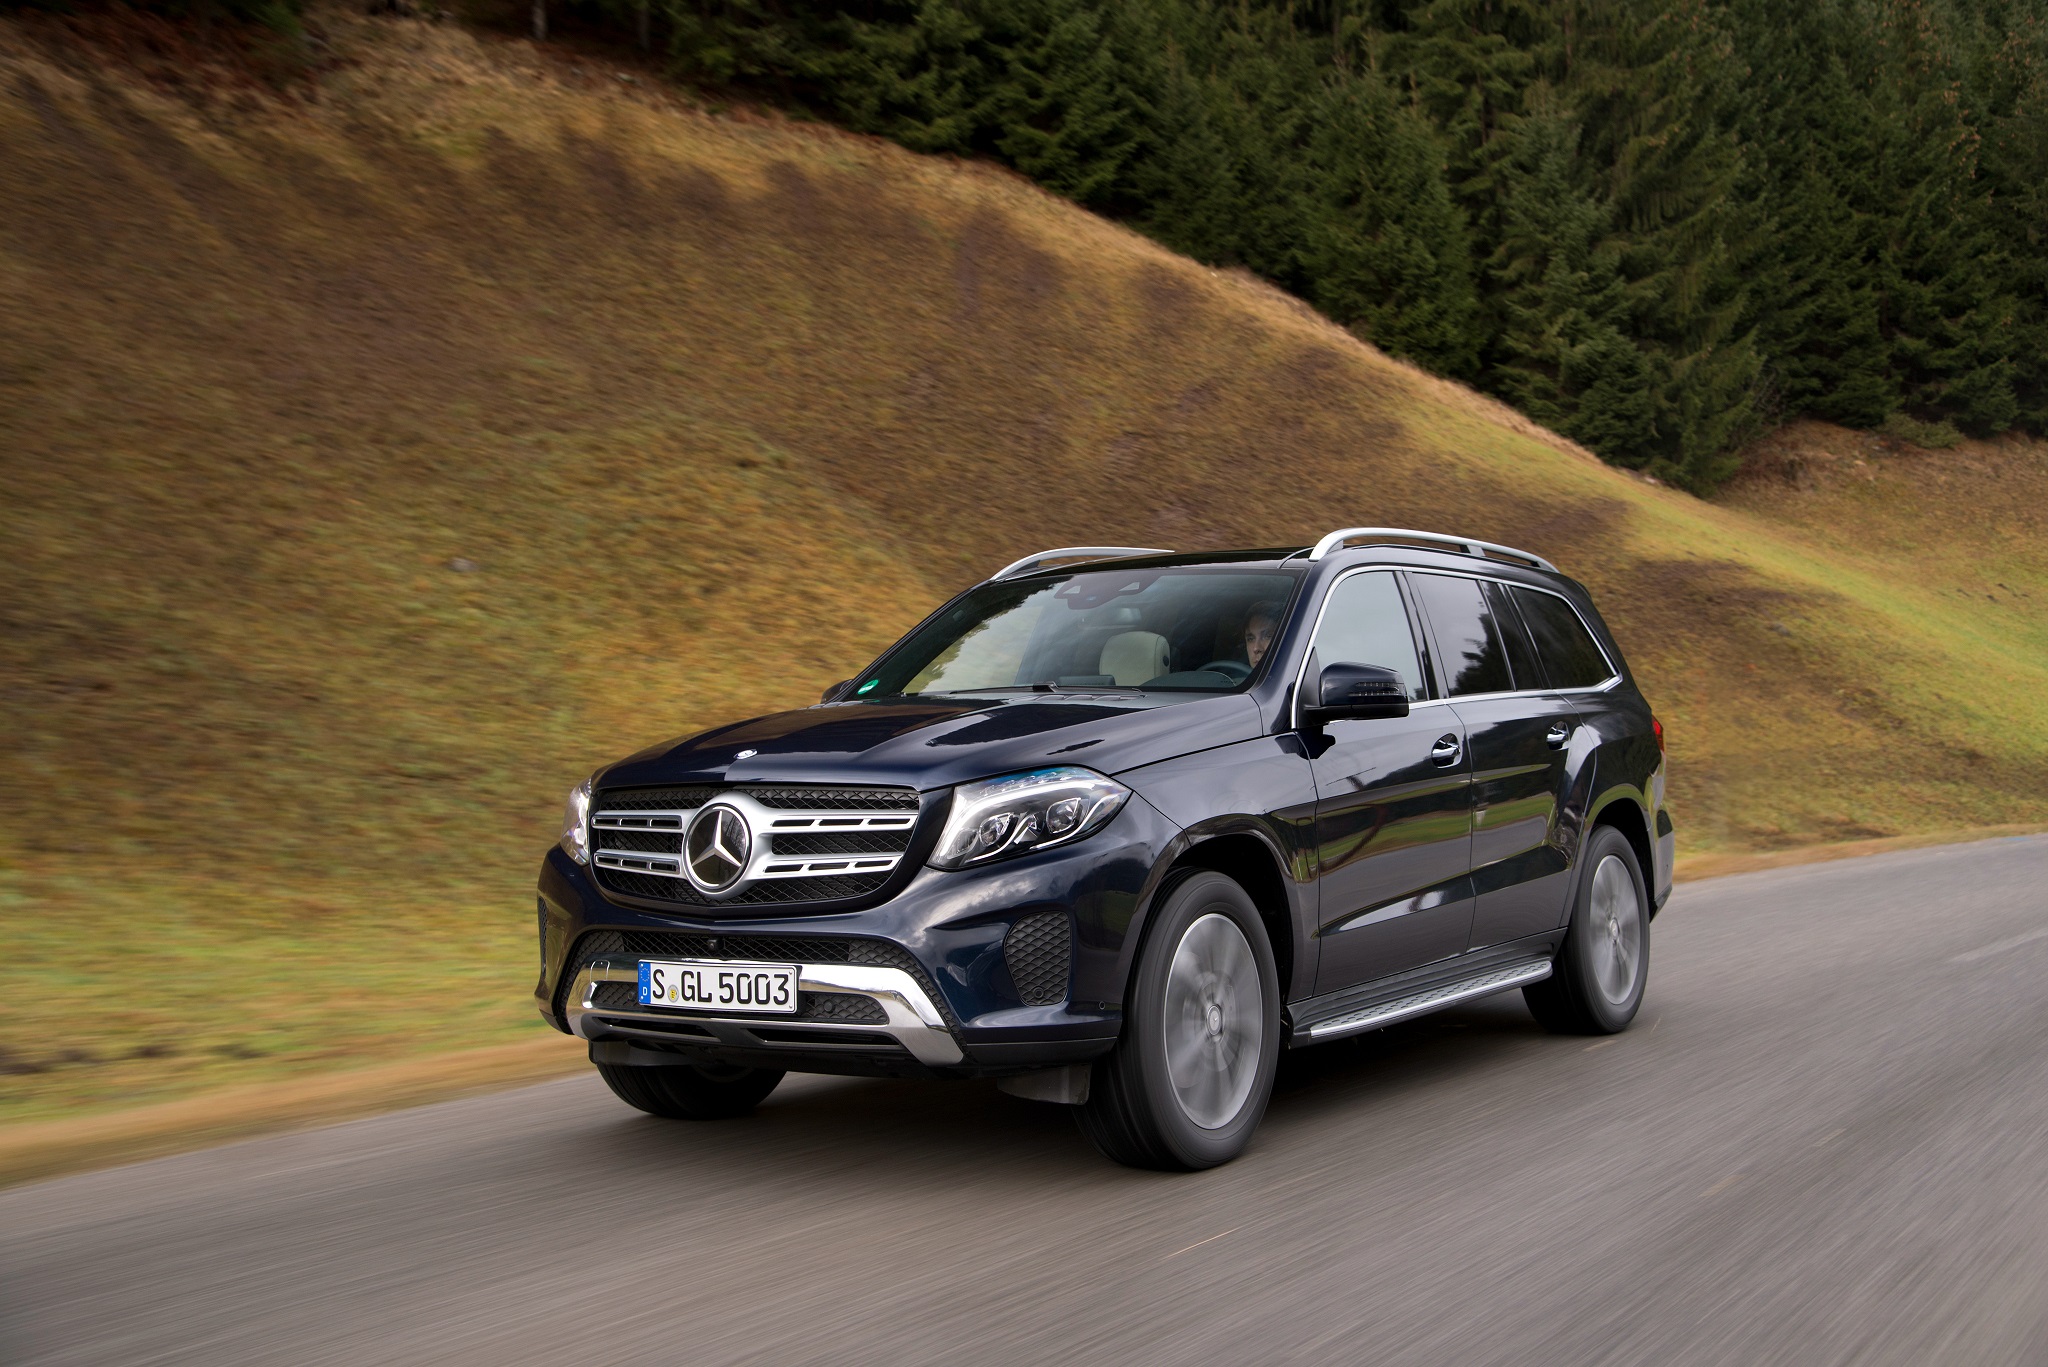 A Mercedes convocou os modelos GLE e GLS para recall dos freios traseiros. Unidades envolvidas no chamamento foram produzidas em abril e junho de 2018.